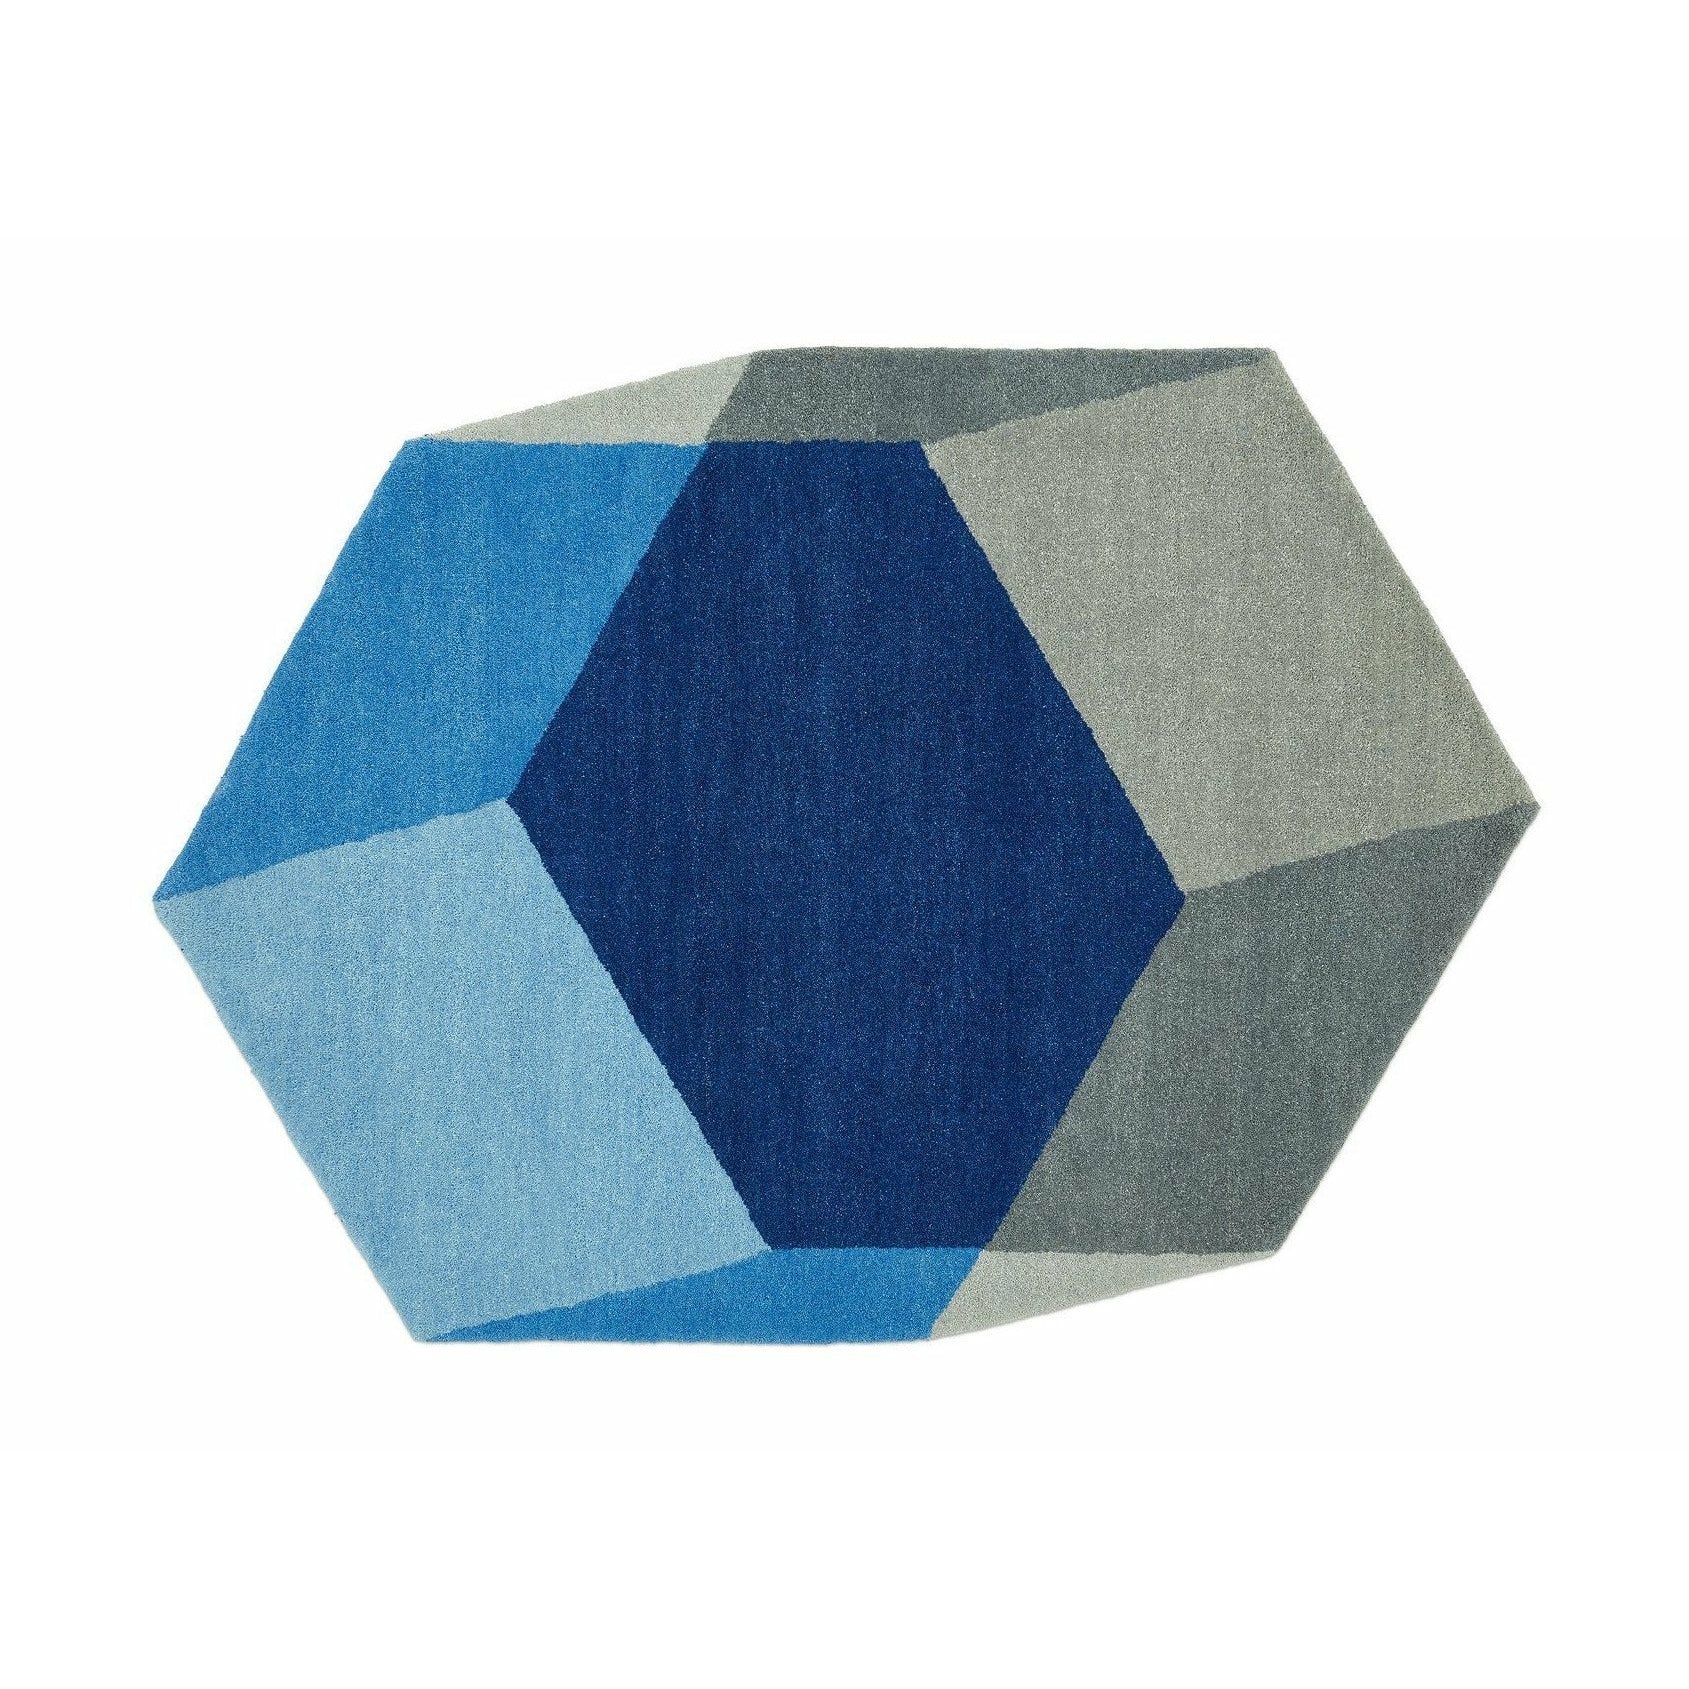 Puik Iso Teppich Hexagon, blau